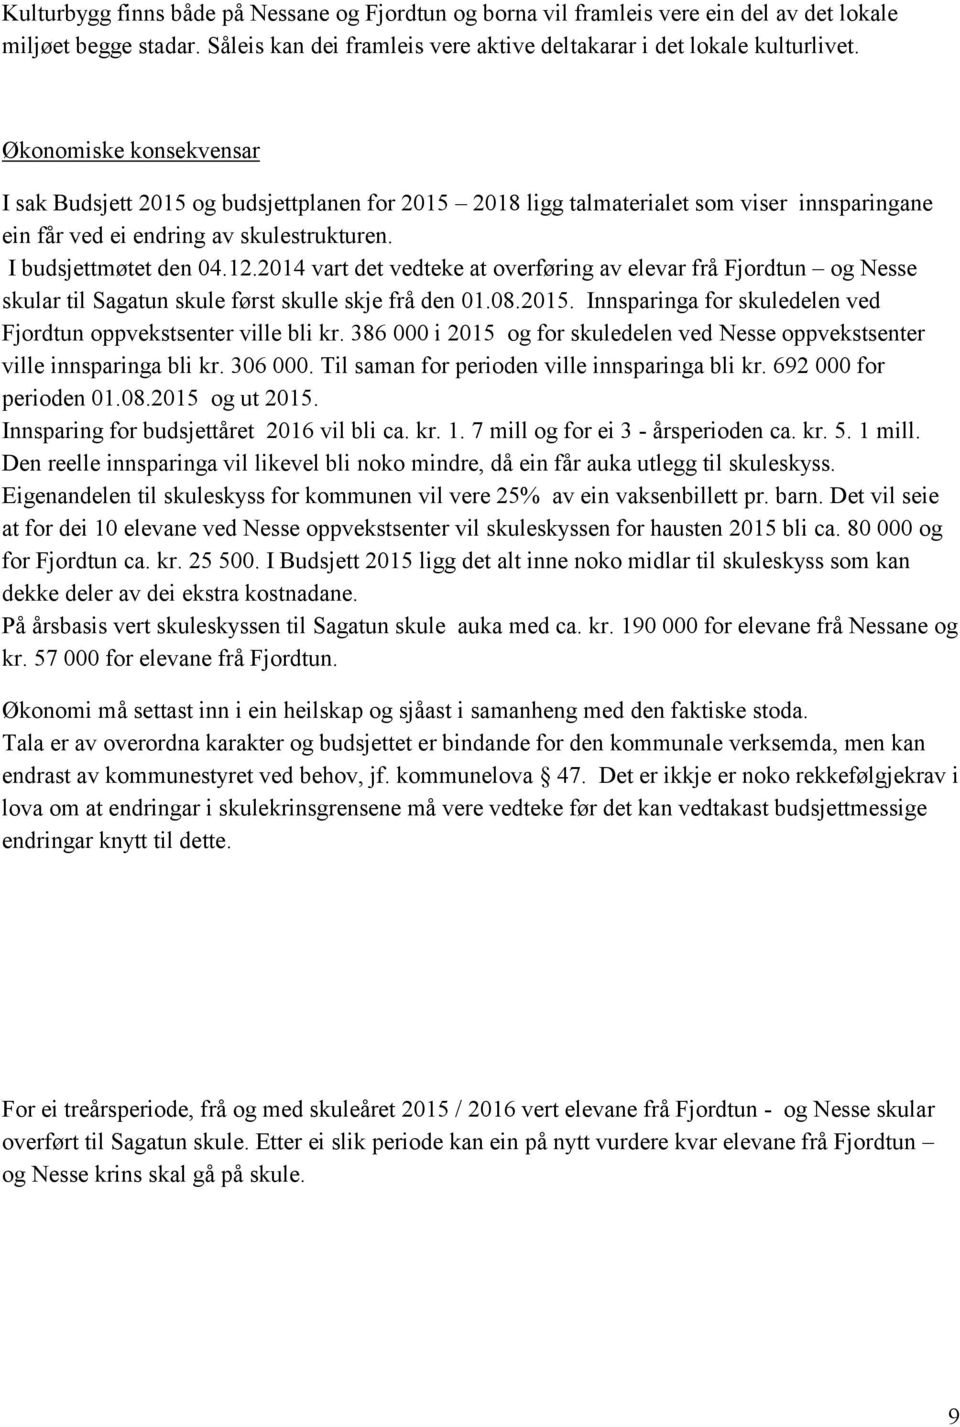 2014 vart det vedteke at overføring av elevar frå Fjordtun og Nesse skular til Sagatun skule først skulle skje frå den 01.08.2015. Innsparinga for skuledelen ved Fjordtun oppvekstsenter ville bli kr.